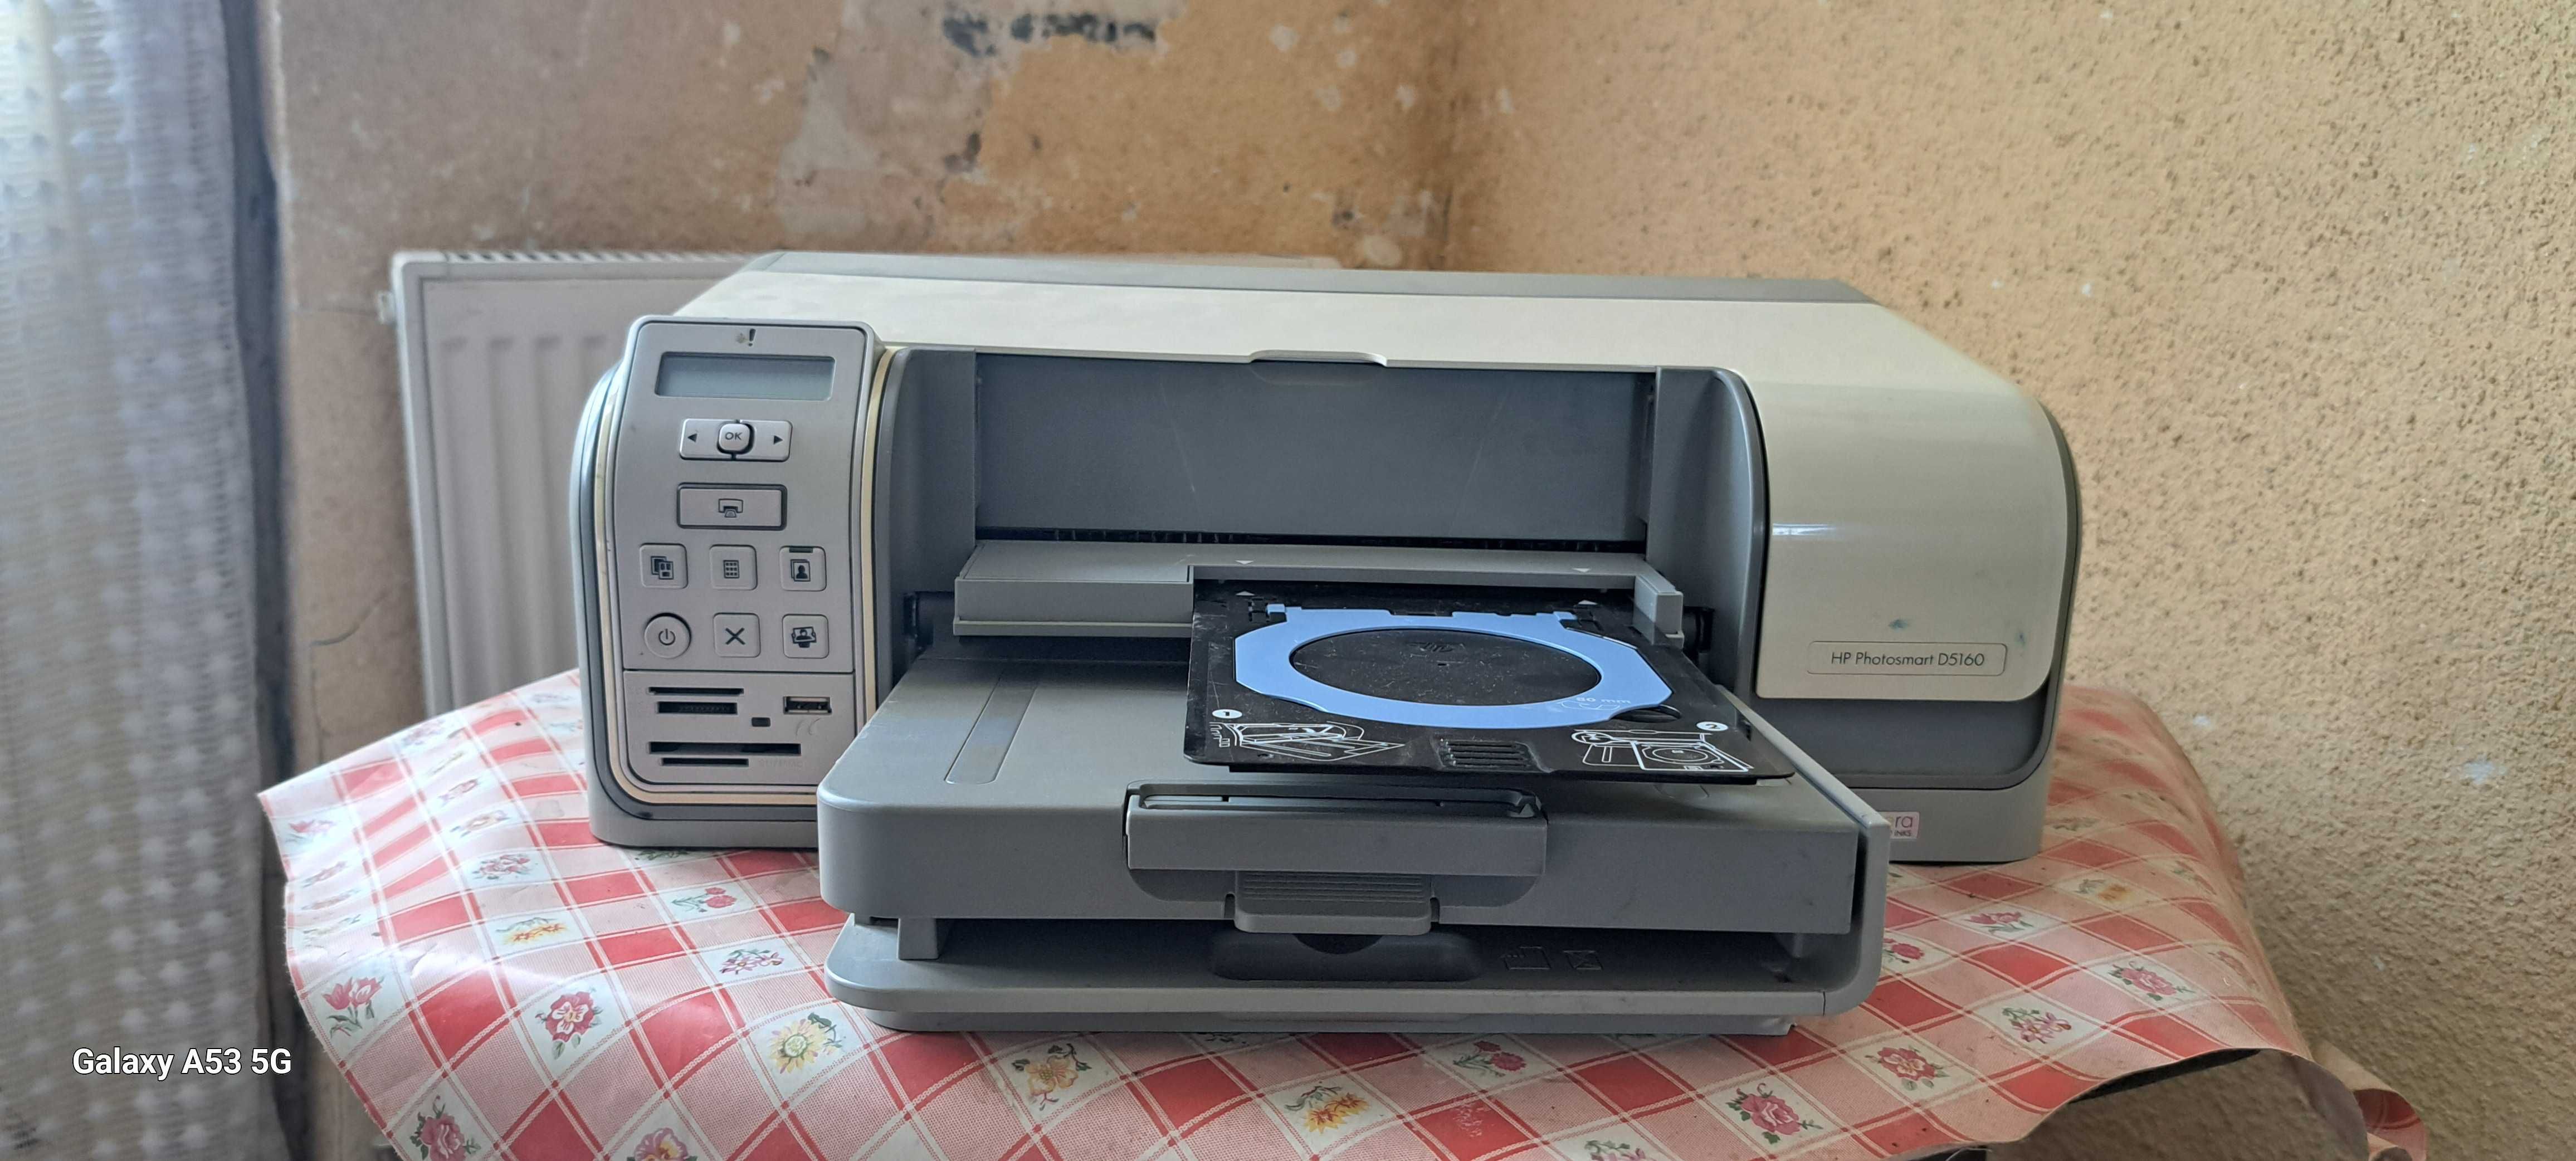 imprimanta color HP ,CD/DVD